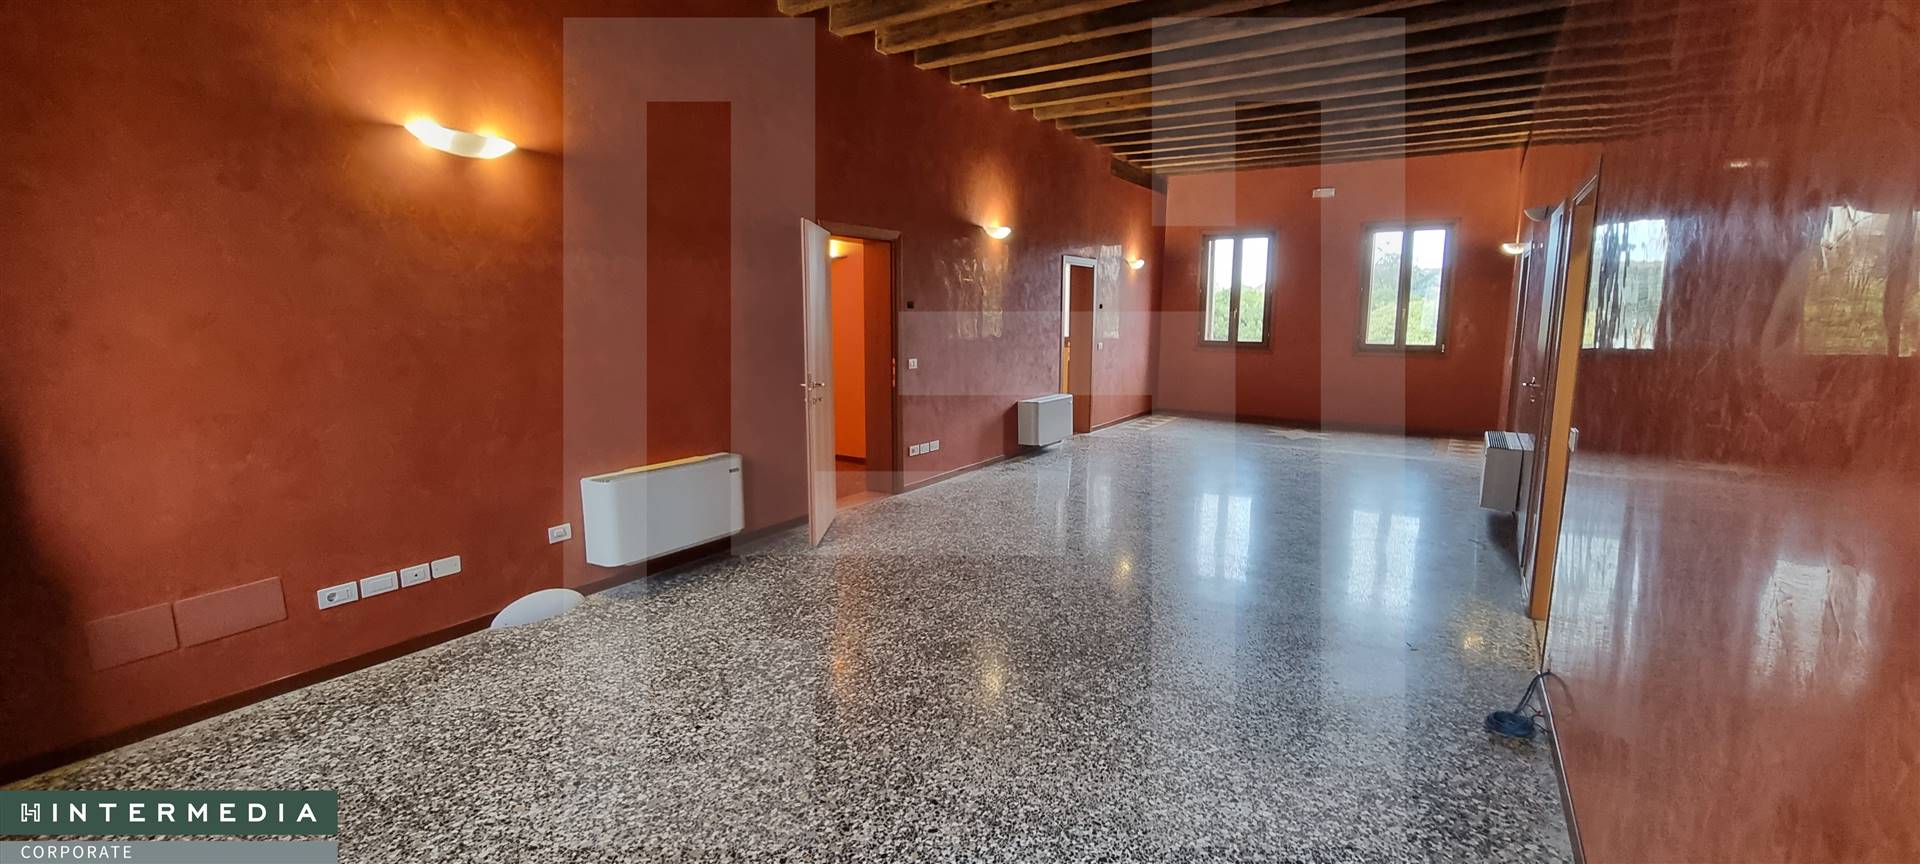 Ufficio / Studio in affitto a Limena, 7 locali, prezzo € 1.500 | PortaleAgenzieImmobiliari.it